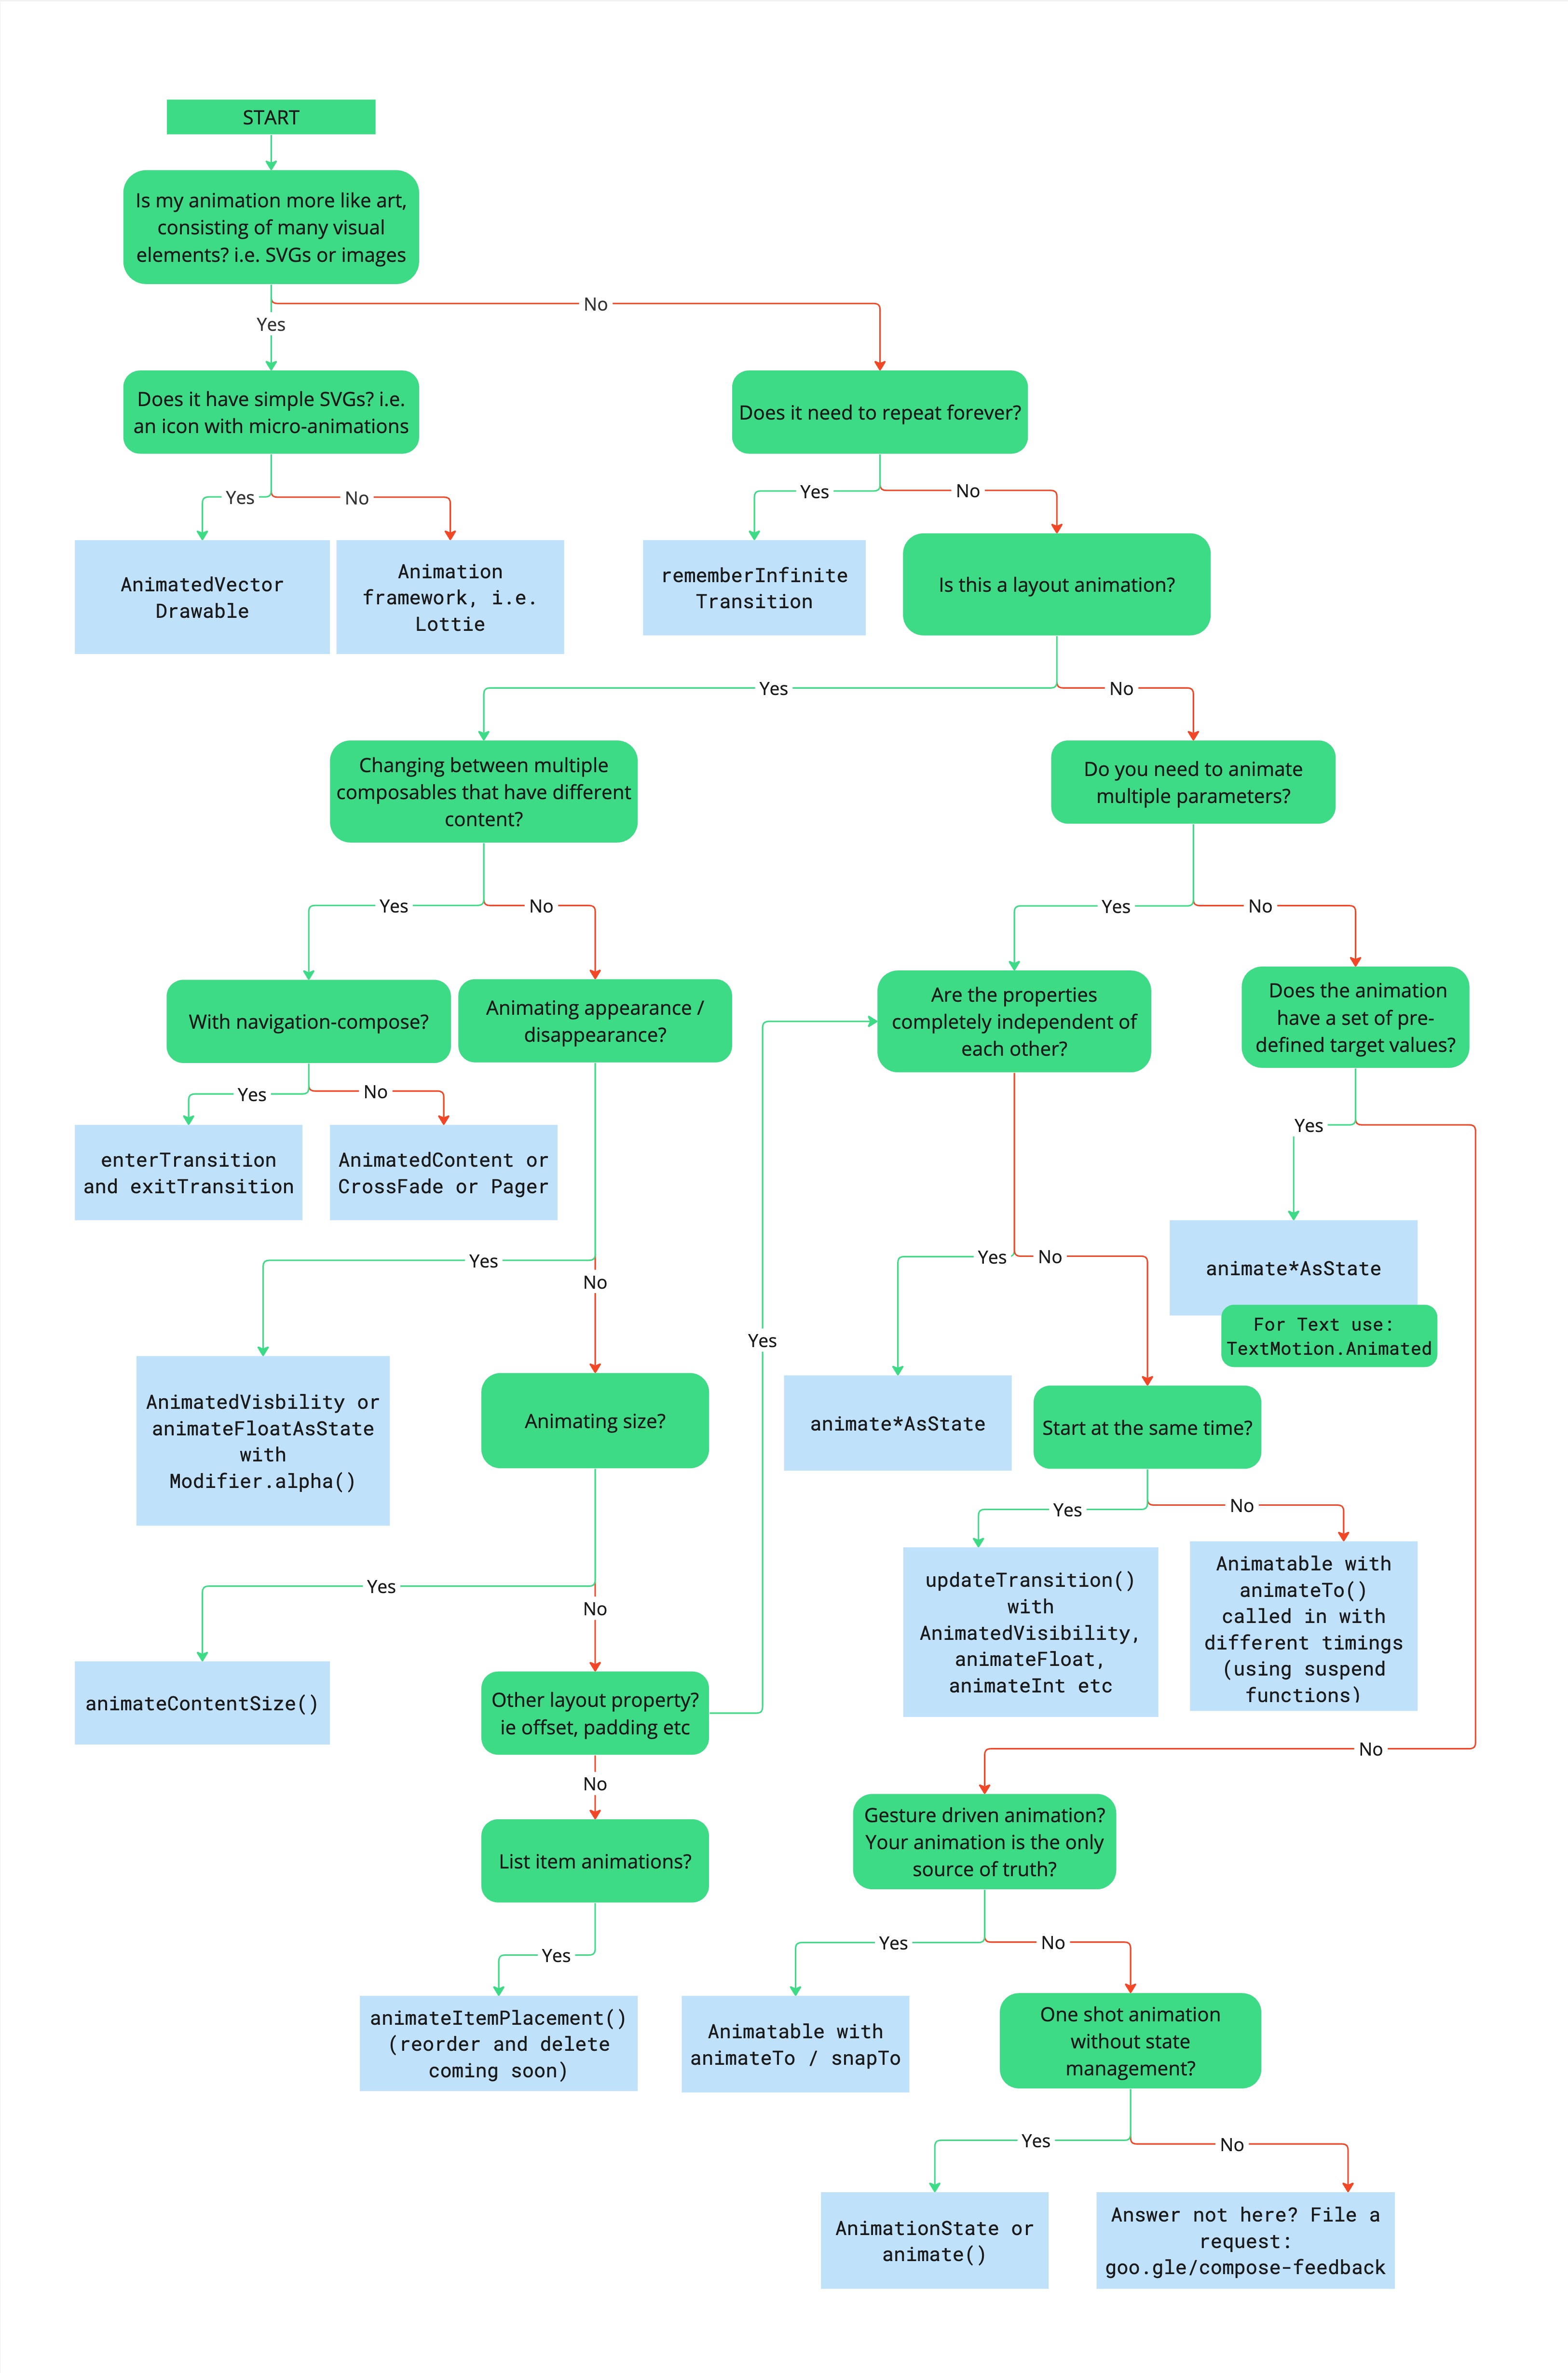 Flussdiagramm zur Beschreibung des Entscheidungsbaums zur Auswahl der passenden Animations-API